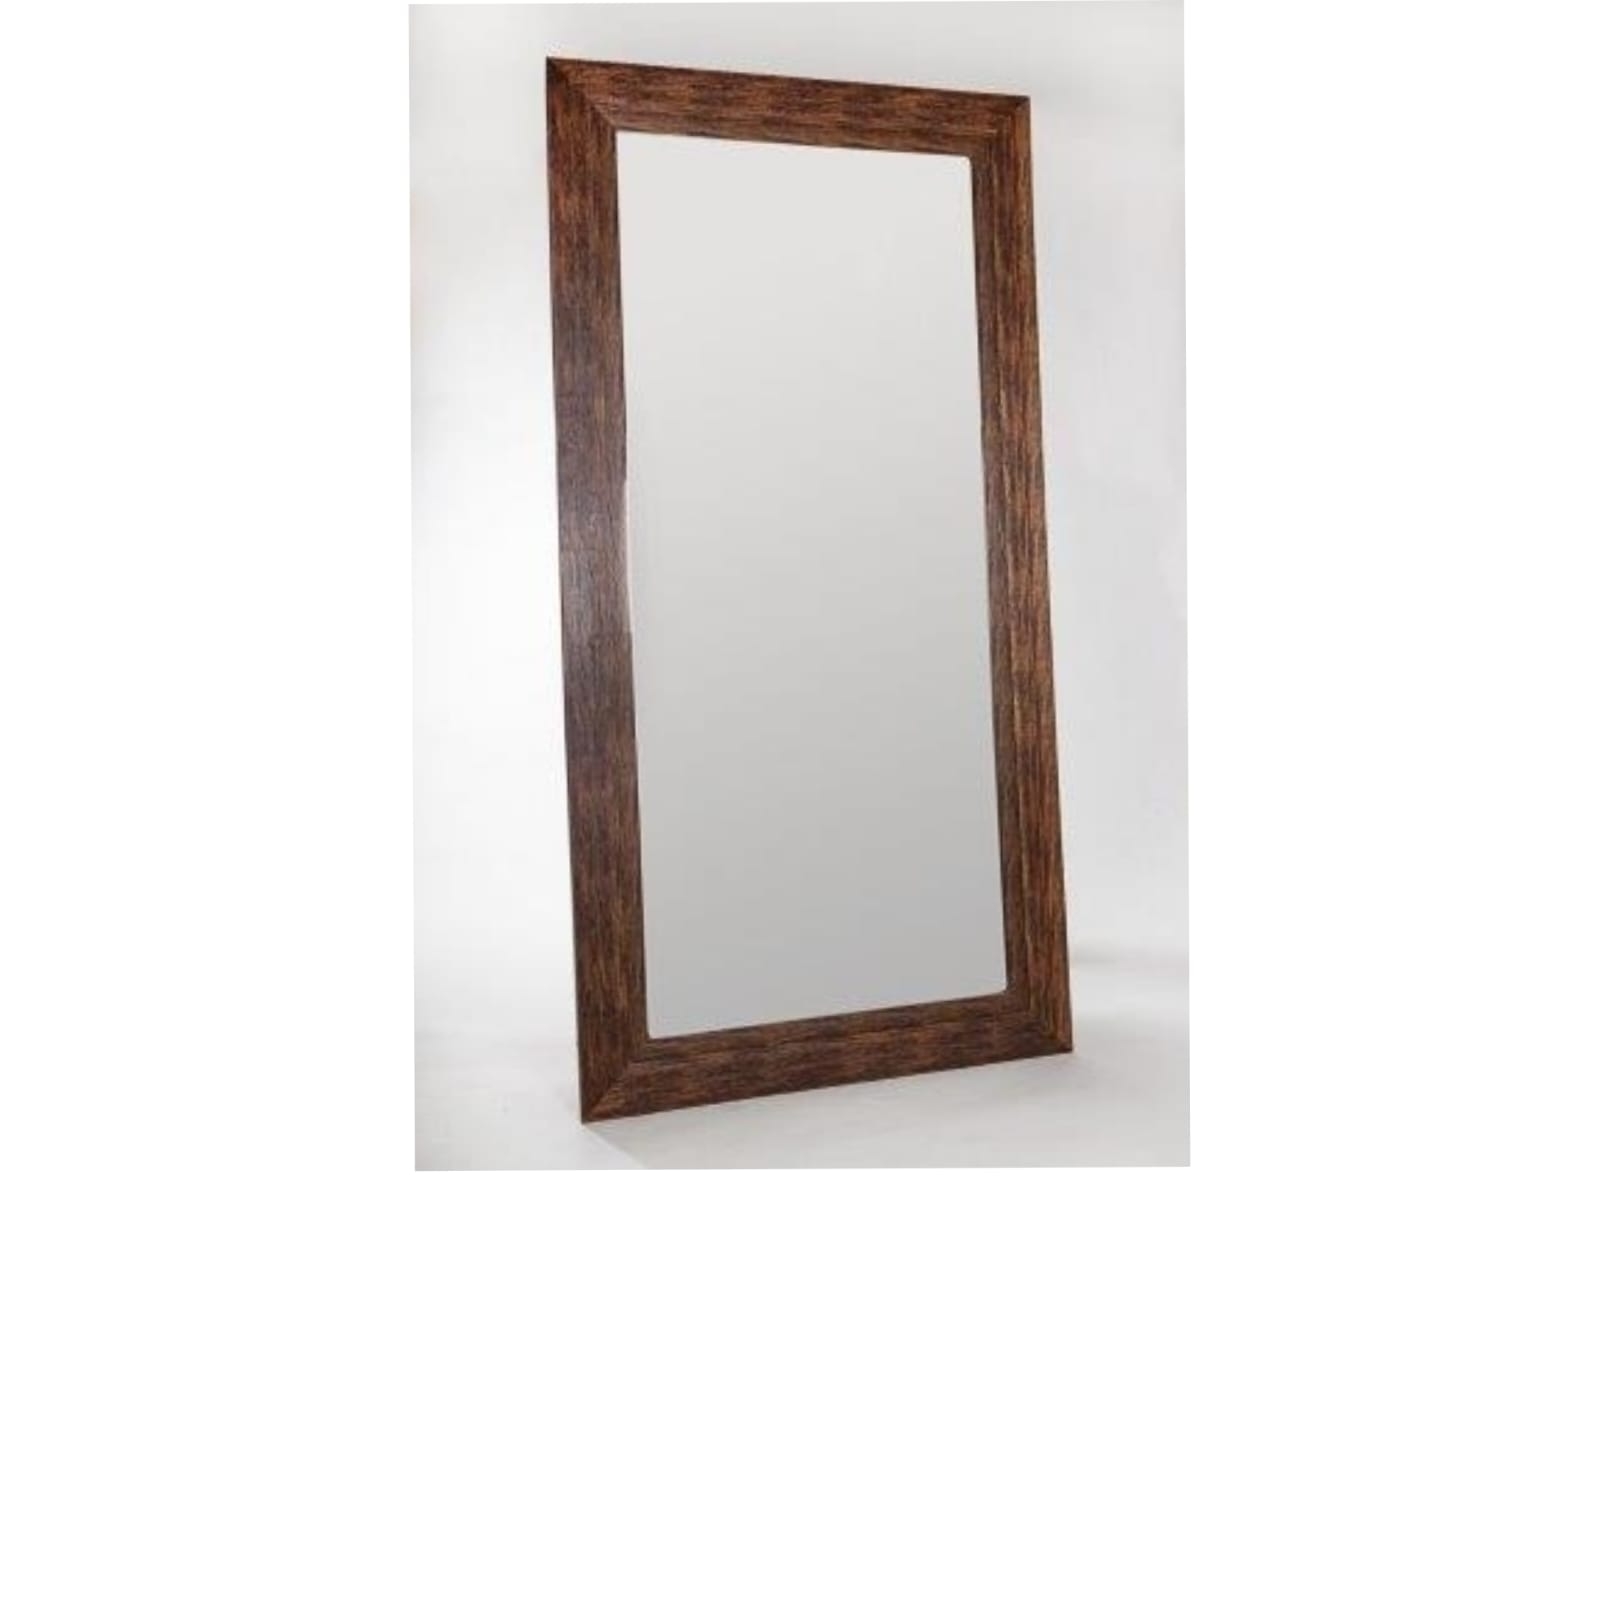 REF 4467 - Espelho Moldura Rústica 2,20 X 1,10 Cm